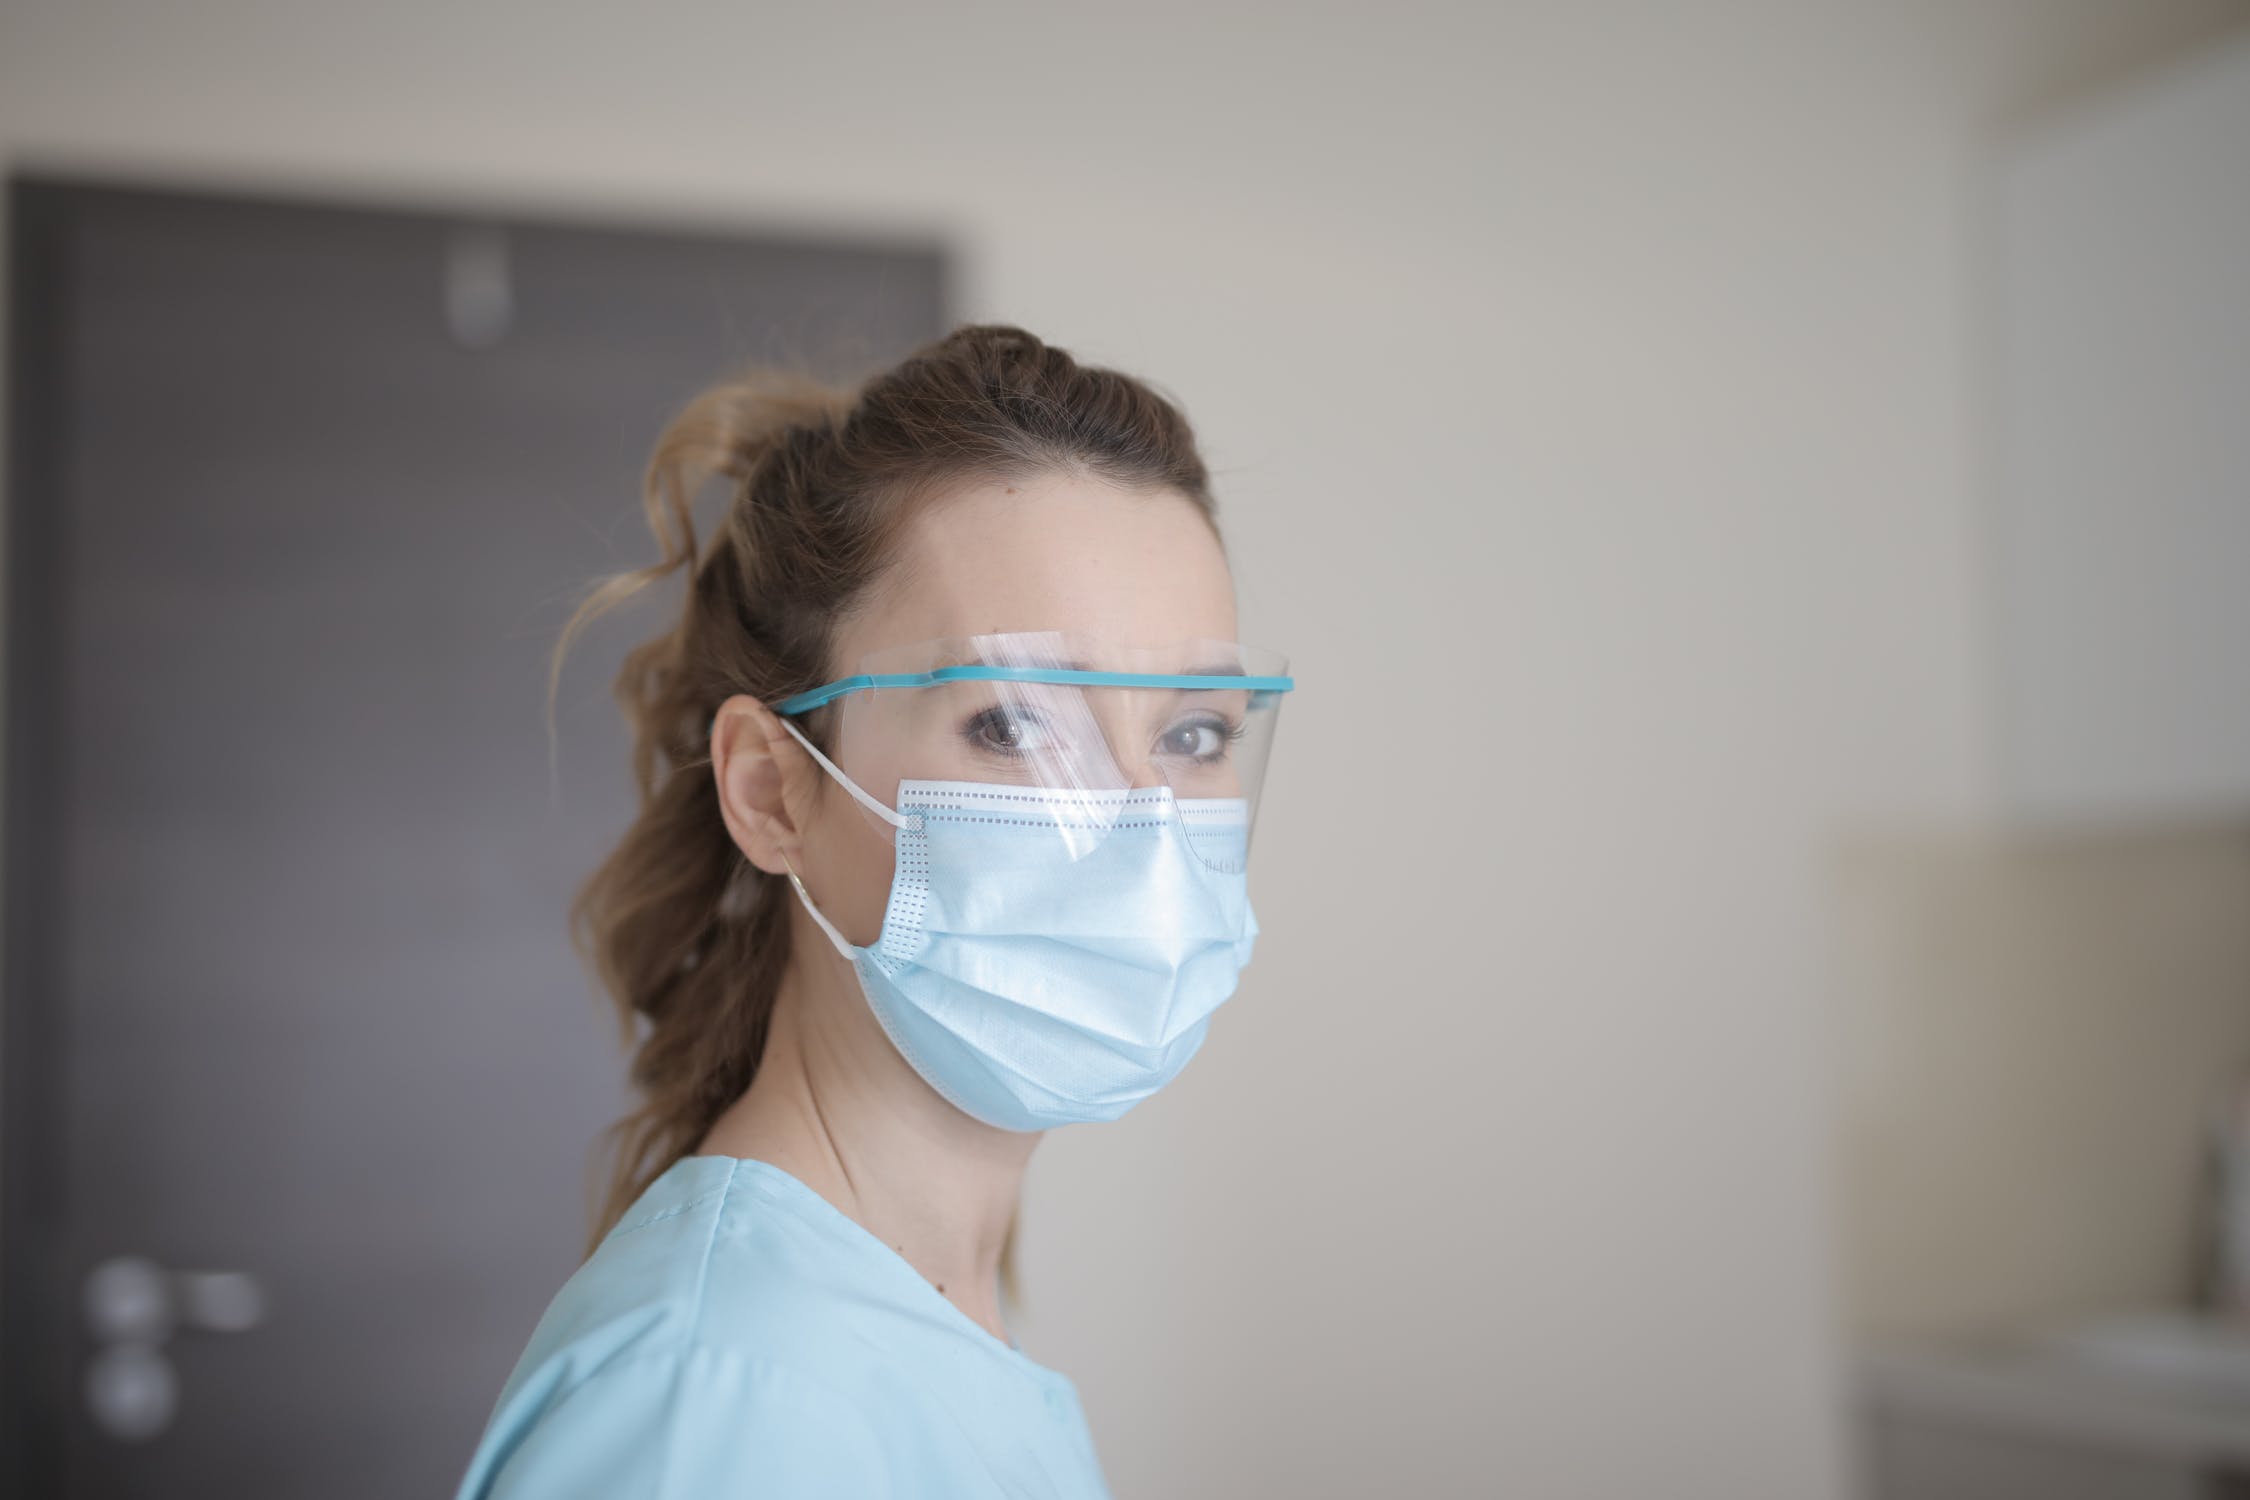 4 de cada 10 médicos se han planteado dejar la profesión durante la pandemia según datos del informe “Repercusiones de la COVID-19 sobre la salud y el ejercicio de la profesión de los médicos de España”